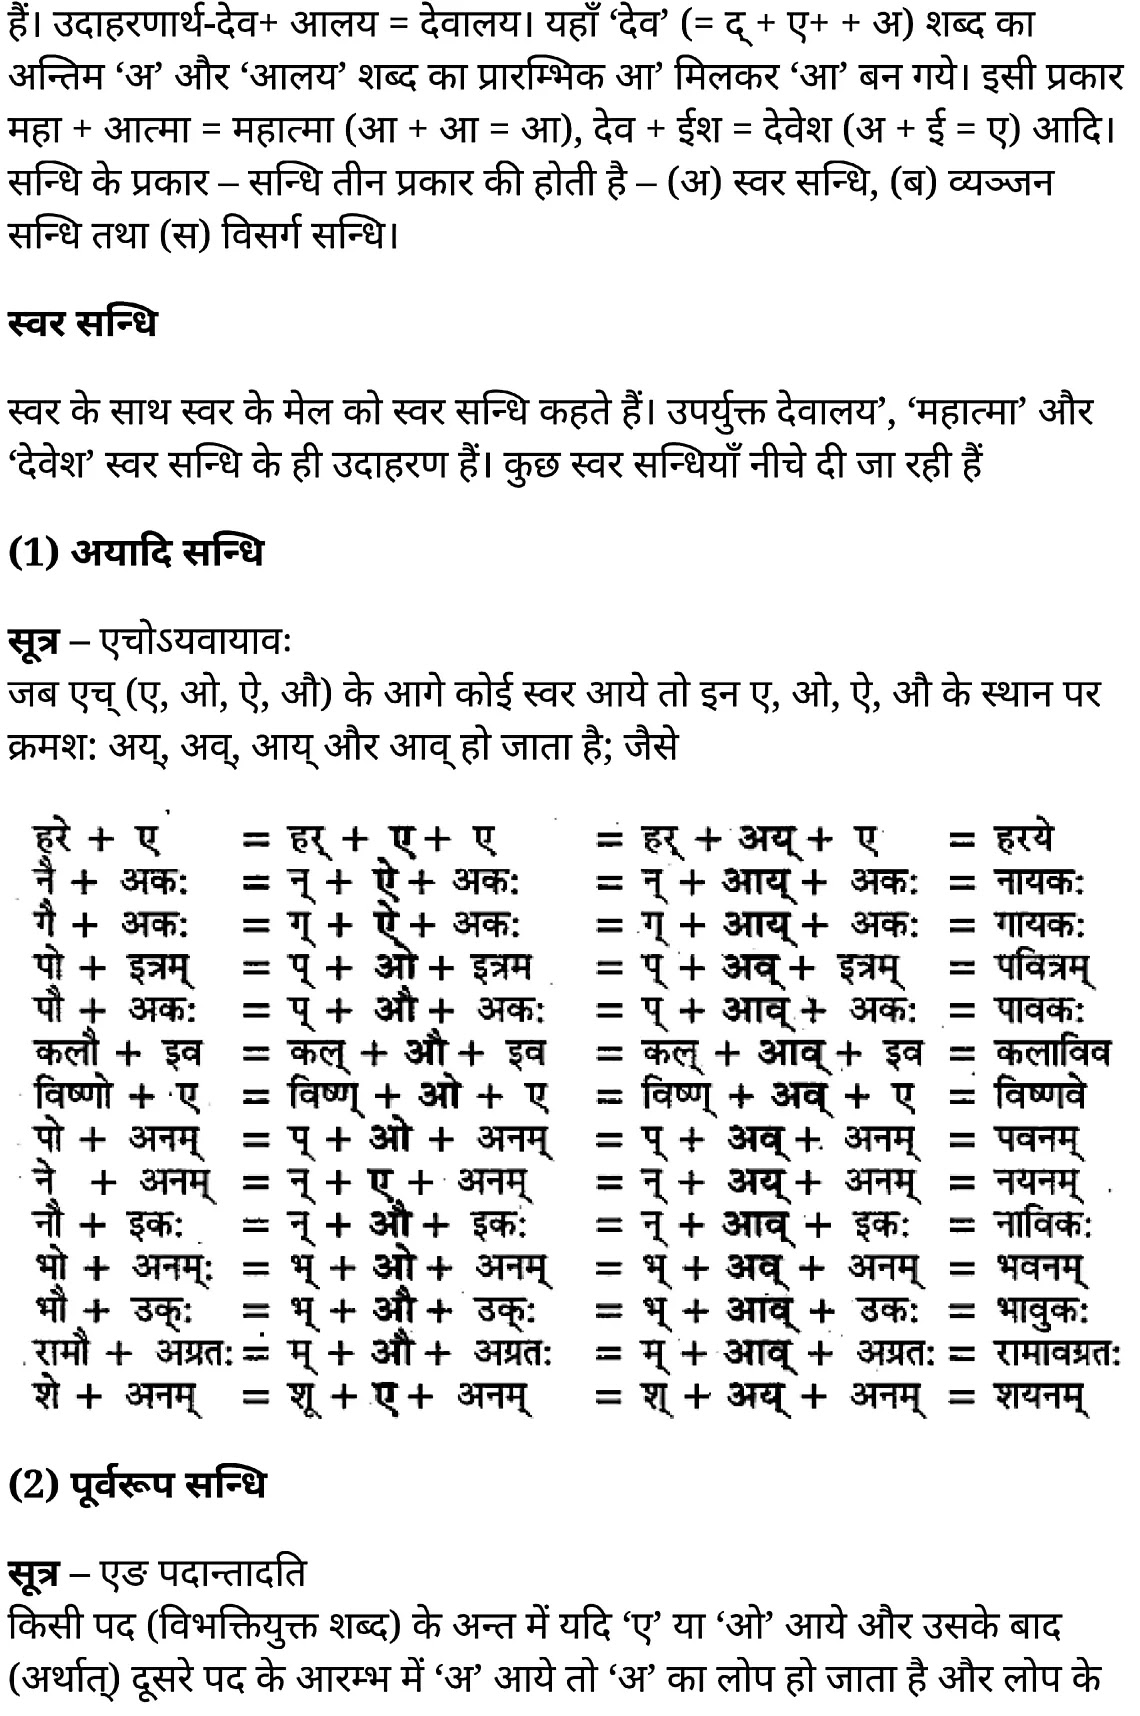 कक्षा 11 साहित्यिक हिंदी सन्धि-प्रकरण  के नोट्स साहित्यिक हिंदी में एनसीईआरटी समाधान,   class 11 sahityik hindi Sandhi-prakaraṇa,  class 11 sahityik hindi Sandhi-prakaraṇa ncert solutions in sahityik hindi,  class 11 sahityik hindi Sandhi-prakaraṇa notes in sahityik hindi,  class 11 sahityik hindi Sandhi-prakaraṇa question answer,  class 11 sahityik hindi Sandhi-prakaraṇa notes,  11   class Sandhi-prakaraṇa in sahityik hindi,  class 11 sahityik hindi Sandhi-prakaraṇa in sahityik hindi,  class 11 sahityik hindi Sandhi-prakaraṇa important questions in sahityik hindi,  class 11 sahityik hindi  Sandhi-prakaraṇa notes in sahityik hindi,  class 11 sahityik hindi Sandhi-prakaraṇa test,  class 11 sahityik hindi Sandhi-prakaraṇa pdf,  class 11 sahityik hindi Sandhi-prakaraṇa notes pdf,  class 11 sahityik hindi Sandhi-prakaraṇa exercise solutions,  class 11 sahityik hindi Sandhi-prakaraṇa, class 11 sahityik hindi Sandhi-prakaraṇa notes study rankers,  class 11 sahityik hindi Sandhi-prakaraṇa notes,  class 11 sahityik hindi  Sandhi-prakaraṇa notes,   Sandhi-prakaraṇa 11  notes pdf, Sandhi-prakaraṇa class 11  notes  ncert,  Sandhi-prakaraṇa class 11 pdf,   Sandhi-prakaraṇa  book,    Sandhi-prakaraṇa quiz class 11  ,       11  th Sandhi-prakaraṇa    book up board,       up board 11  th Sandhi-prakaraṇa notes,  कक्षा 11 साहित्यिक हिंदी सन्धि-प्रकरण , कक्षा 11 साहित्यिक हिंदी का सन्धि-प्रकरण , कक्षा 11 साहित्यिक हिंदी  के सन्धि-प्रकरण  के नोट्स हिंदी में, कक्षा 11 का साहित्यिक हिंदी सन्धि-प्रकरण का प्रश्न उत्तर, कक्षा 11 साहित्यिक हिंदी सन्धि-प्रकरण  के नोट्स, 11 कक्षा साहित्यिक हिंदी सन्धि-प्रकरण   साहित्यिक हिंदी में, कक्षा 11 साहित्यिक हिंदी सन्धि-प्रकरण हिंदी में, कक्षा 11 साहित्यिक हिंदी सन्धि-प्रकरण  महत्वपूर्ण प्रश्न हिंदी में, कक्षा 11 के साहित्यिक हिंदी के नोट्स हिंदी में,साहित्यिक हिंदी  कक्षा 11 नोट्स pdf,  साहित्यिक हिंदी  कक्षा 11 नोट्स 2021 ncert,  साहित्यिक हिंदी  कक्षा 11 pdf,  साहित्यिक हिंदी  पुस्तक,  साहित्यिक हिंदी की बुक,  साहित्यिक हिंदी  प्रश्नोत्तरी class 11  , 11   वीं साहित्यिक हिंदी  पुस्तक up board,  बिहार बोर्ड 11  पुस्तक वीं साहित्यिक हिंदी नोट्स,    11th sahityik hindi Sandhi-prakaraṇa   book in hindi, 11th sahityik hindi Sandhi-prakaraṇa notes in hindi, cbse books for class 11  , cbse books in hindi, cbse ncert books, class 11   sahityik hindi Sandhi-prakaraṇa   notes in hindi,  class 11   sahityik hindi ncert solutions, sahityik hindi Sandhi-prakaraṇa 2020, sahityik hindi Sandhi-prakaraṇa  2021, sahityik hindi Sandhi-prakaraṇa   2022, sahityik hindi Sandhi-prakaraṇa  book class 11  , sahityik hindi Sandhi-prakaraṇa book in hindi, sahityik hindi Sandhi-prakaraṇa  class 11   in hindi, sahityik hindi Sandhi-prakaraṇa   notes for class 11   up board in hindi, ncert all books, ncert app in sahityik hindi, ncert book solution, ncert books class 10, ncert books class 11  , ncert books for class 7, ncert books for upsc in hindi, ncert books in hindi class 10, ncert books in hindi for class 11 sahityik hindi Sandhi-prakaraṇa  , ncert books in hindi for class 6, ncert books in hindi pdf, ncert class 11 sahityik hindi book, ncert english book, ncert sahityik hindi Sandhi-prakaraṇa  book in hindi, ncert sahityik hindi Sandhi-prakaraṇa  books in hindi pdf, ncert sahityik hindi Sandhi-prakaraṇa class 11 ,    ncert in hindi,  old ncert books in hindi, online ncert books in hindi,  up board 11  th, up board 11  th syllabus, up board class 10 sahityik hindi book, up board class 11   books, up board class 11   new syllabus, up board intermediate sahityik hindi Sandhi-prakaraṇa  syllabus, up board intermediate syllabus 2021, Up board Master 2021, up board model paper 2021, up board model paper all subject, up board new syllabus of class 11  th sahityik hindi Sandhi-prakaraṇa ,